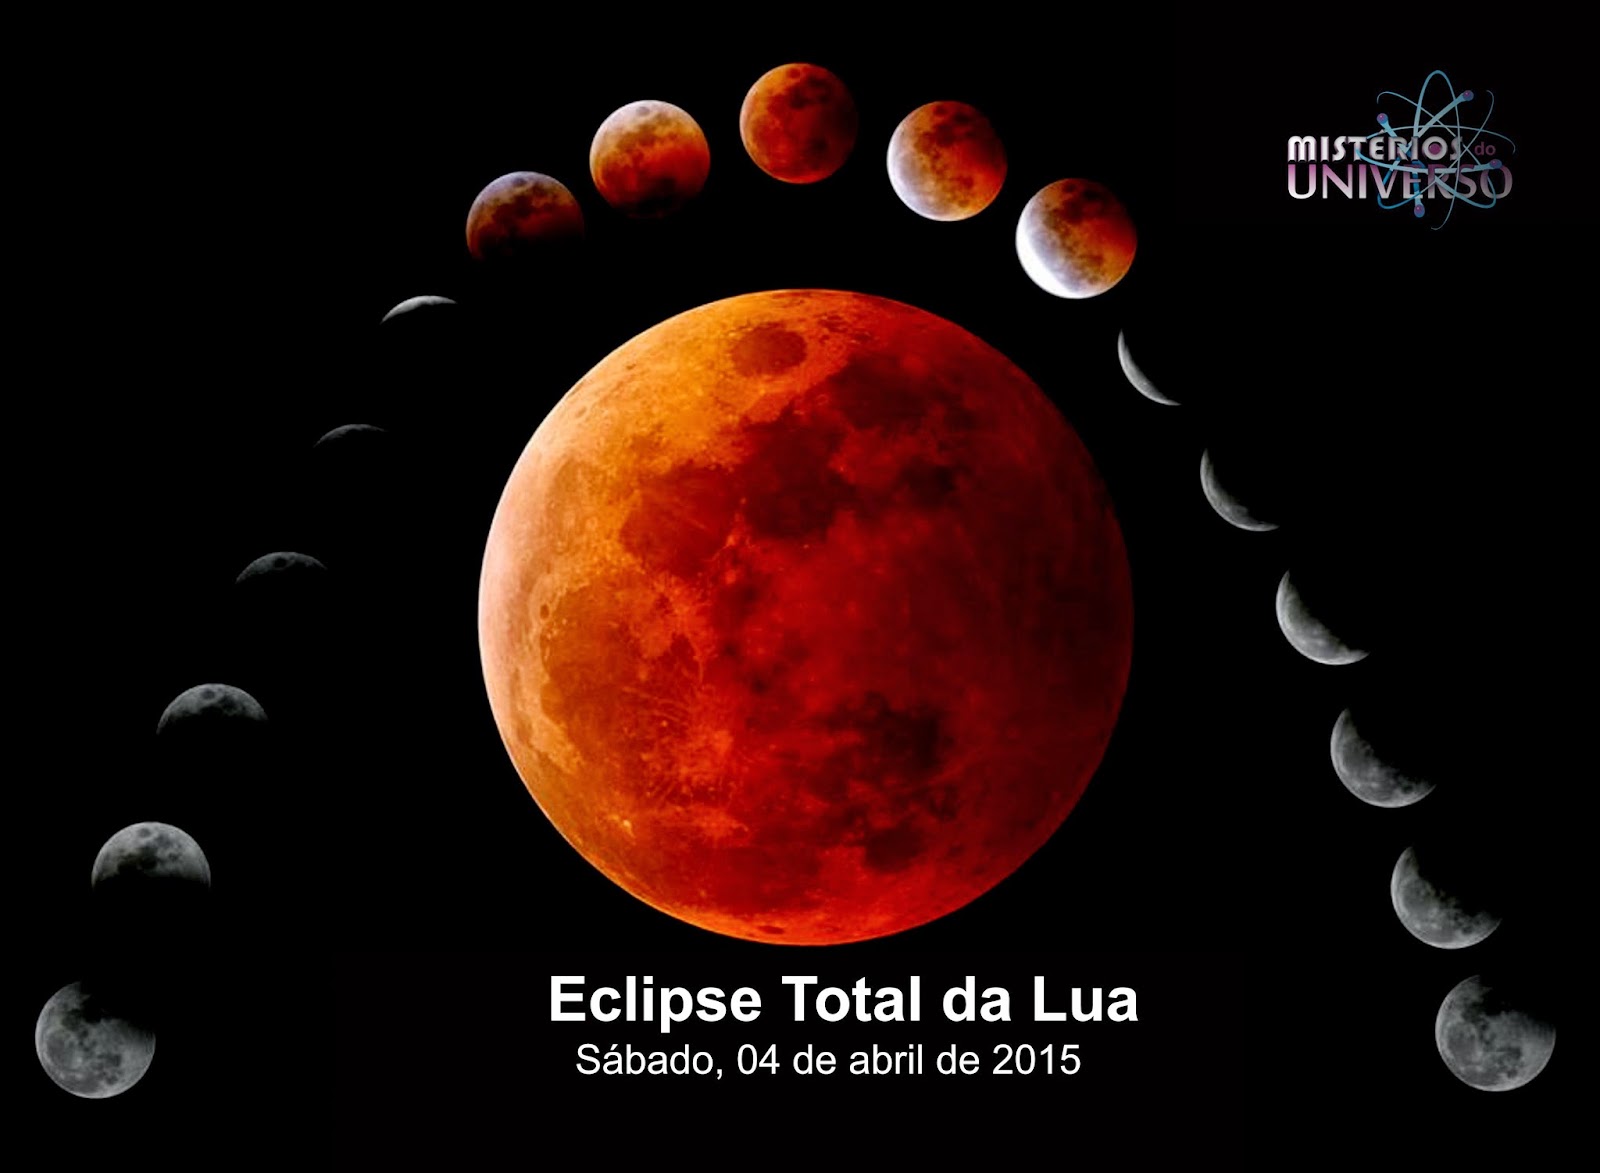 Primeiro eclipse lunar de 2015 será nesse sábado Mistérios do Universo